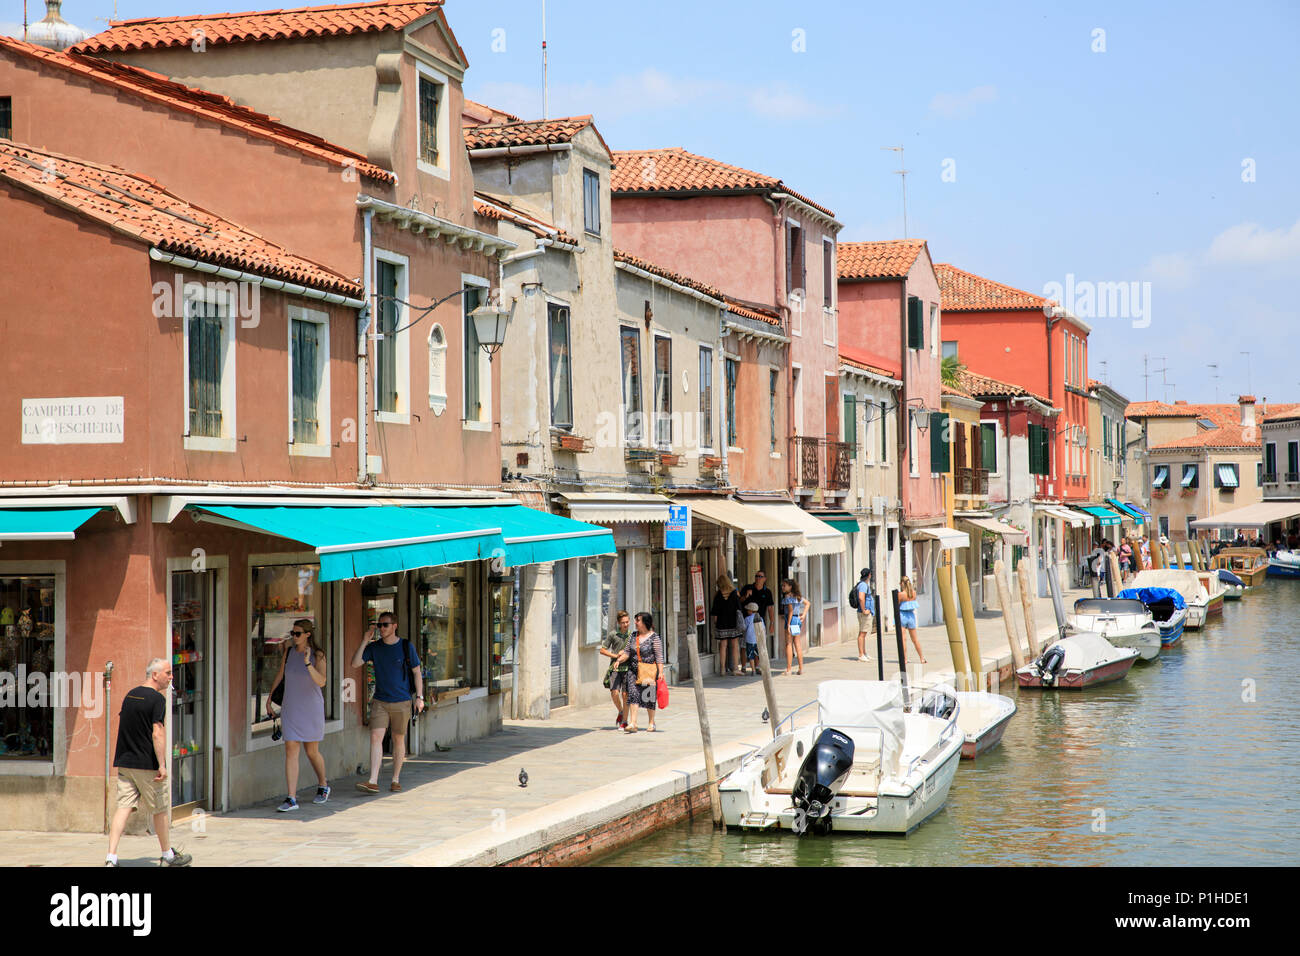 Fondamenta dei Vetrai, l'île de Murano, Venise, Italie. Banque D'Images